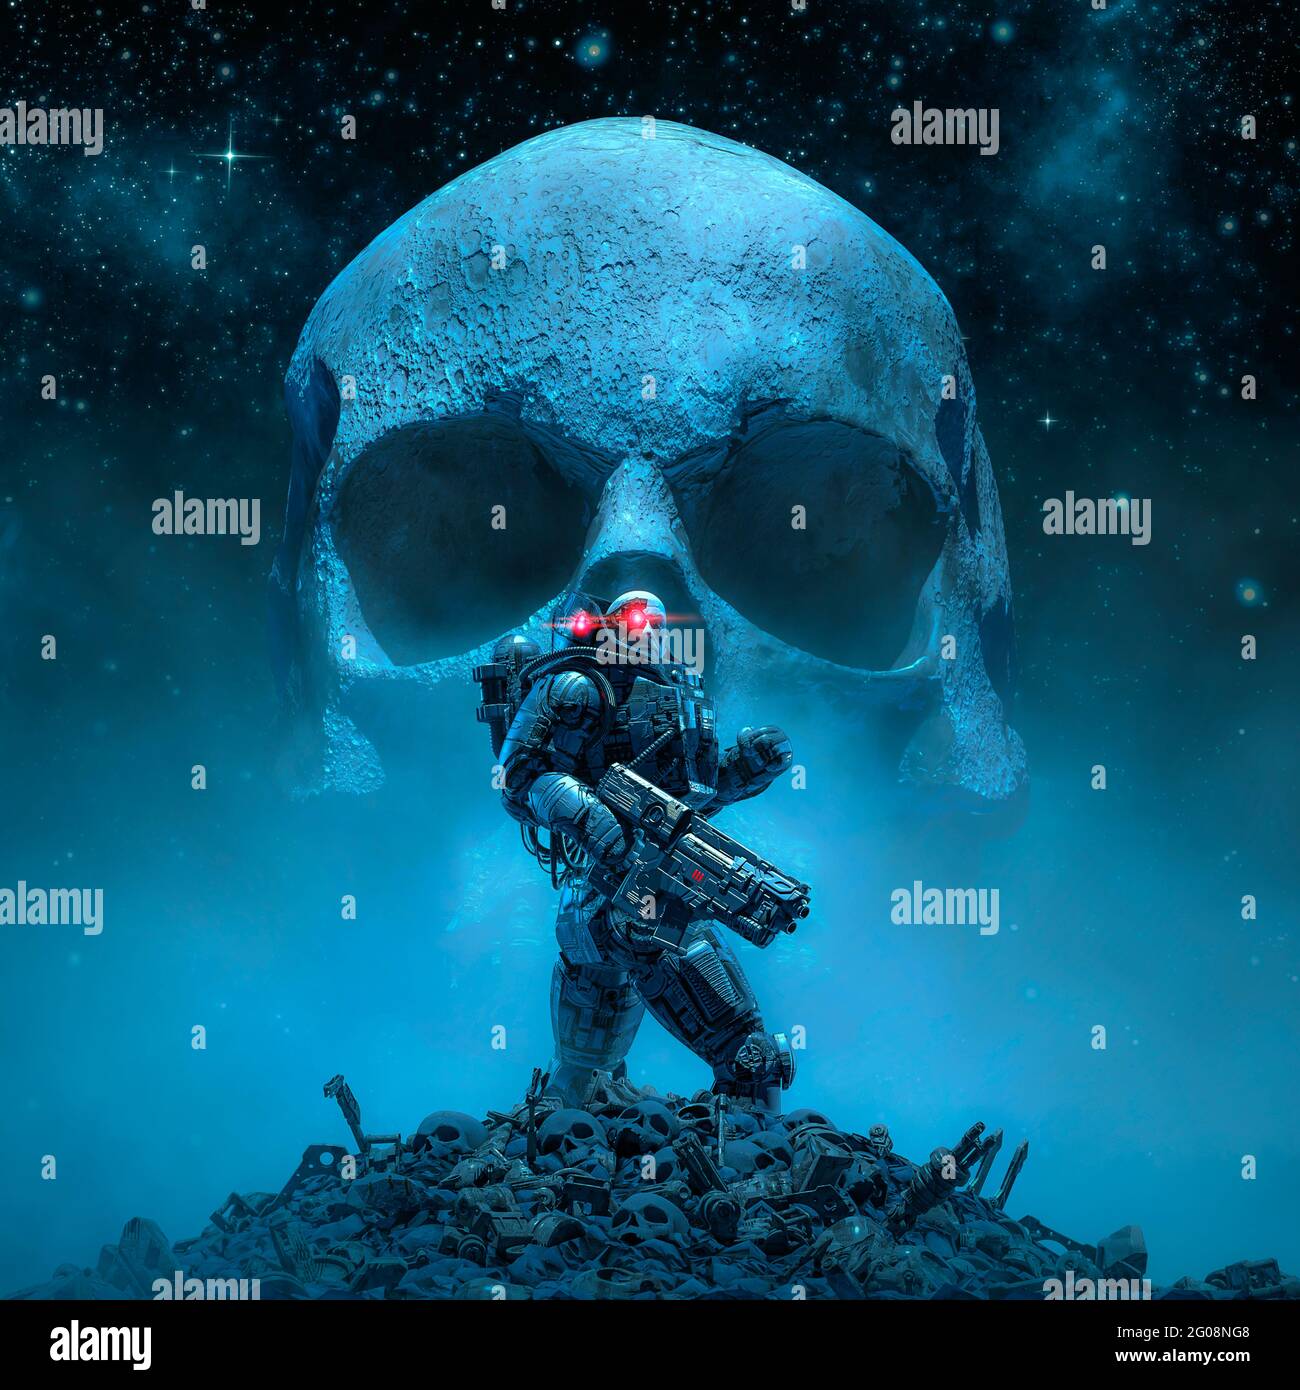 Cyberpunk soldato luna cranio / 3D illustrazione di fantascienza guerriero robot militare in piedi tra macerie nello spazio con gigantesco spaventoso sk umano Foto Stock